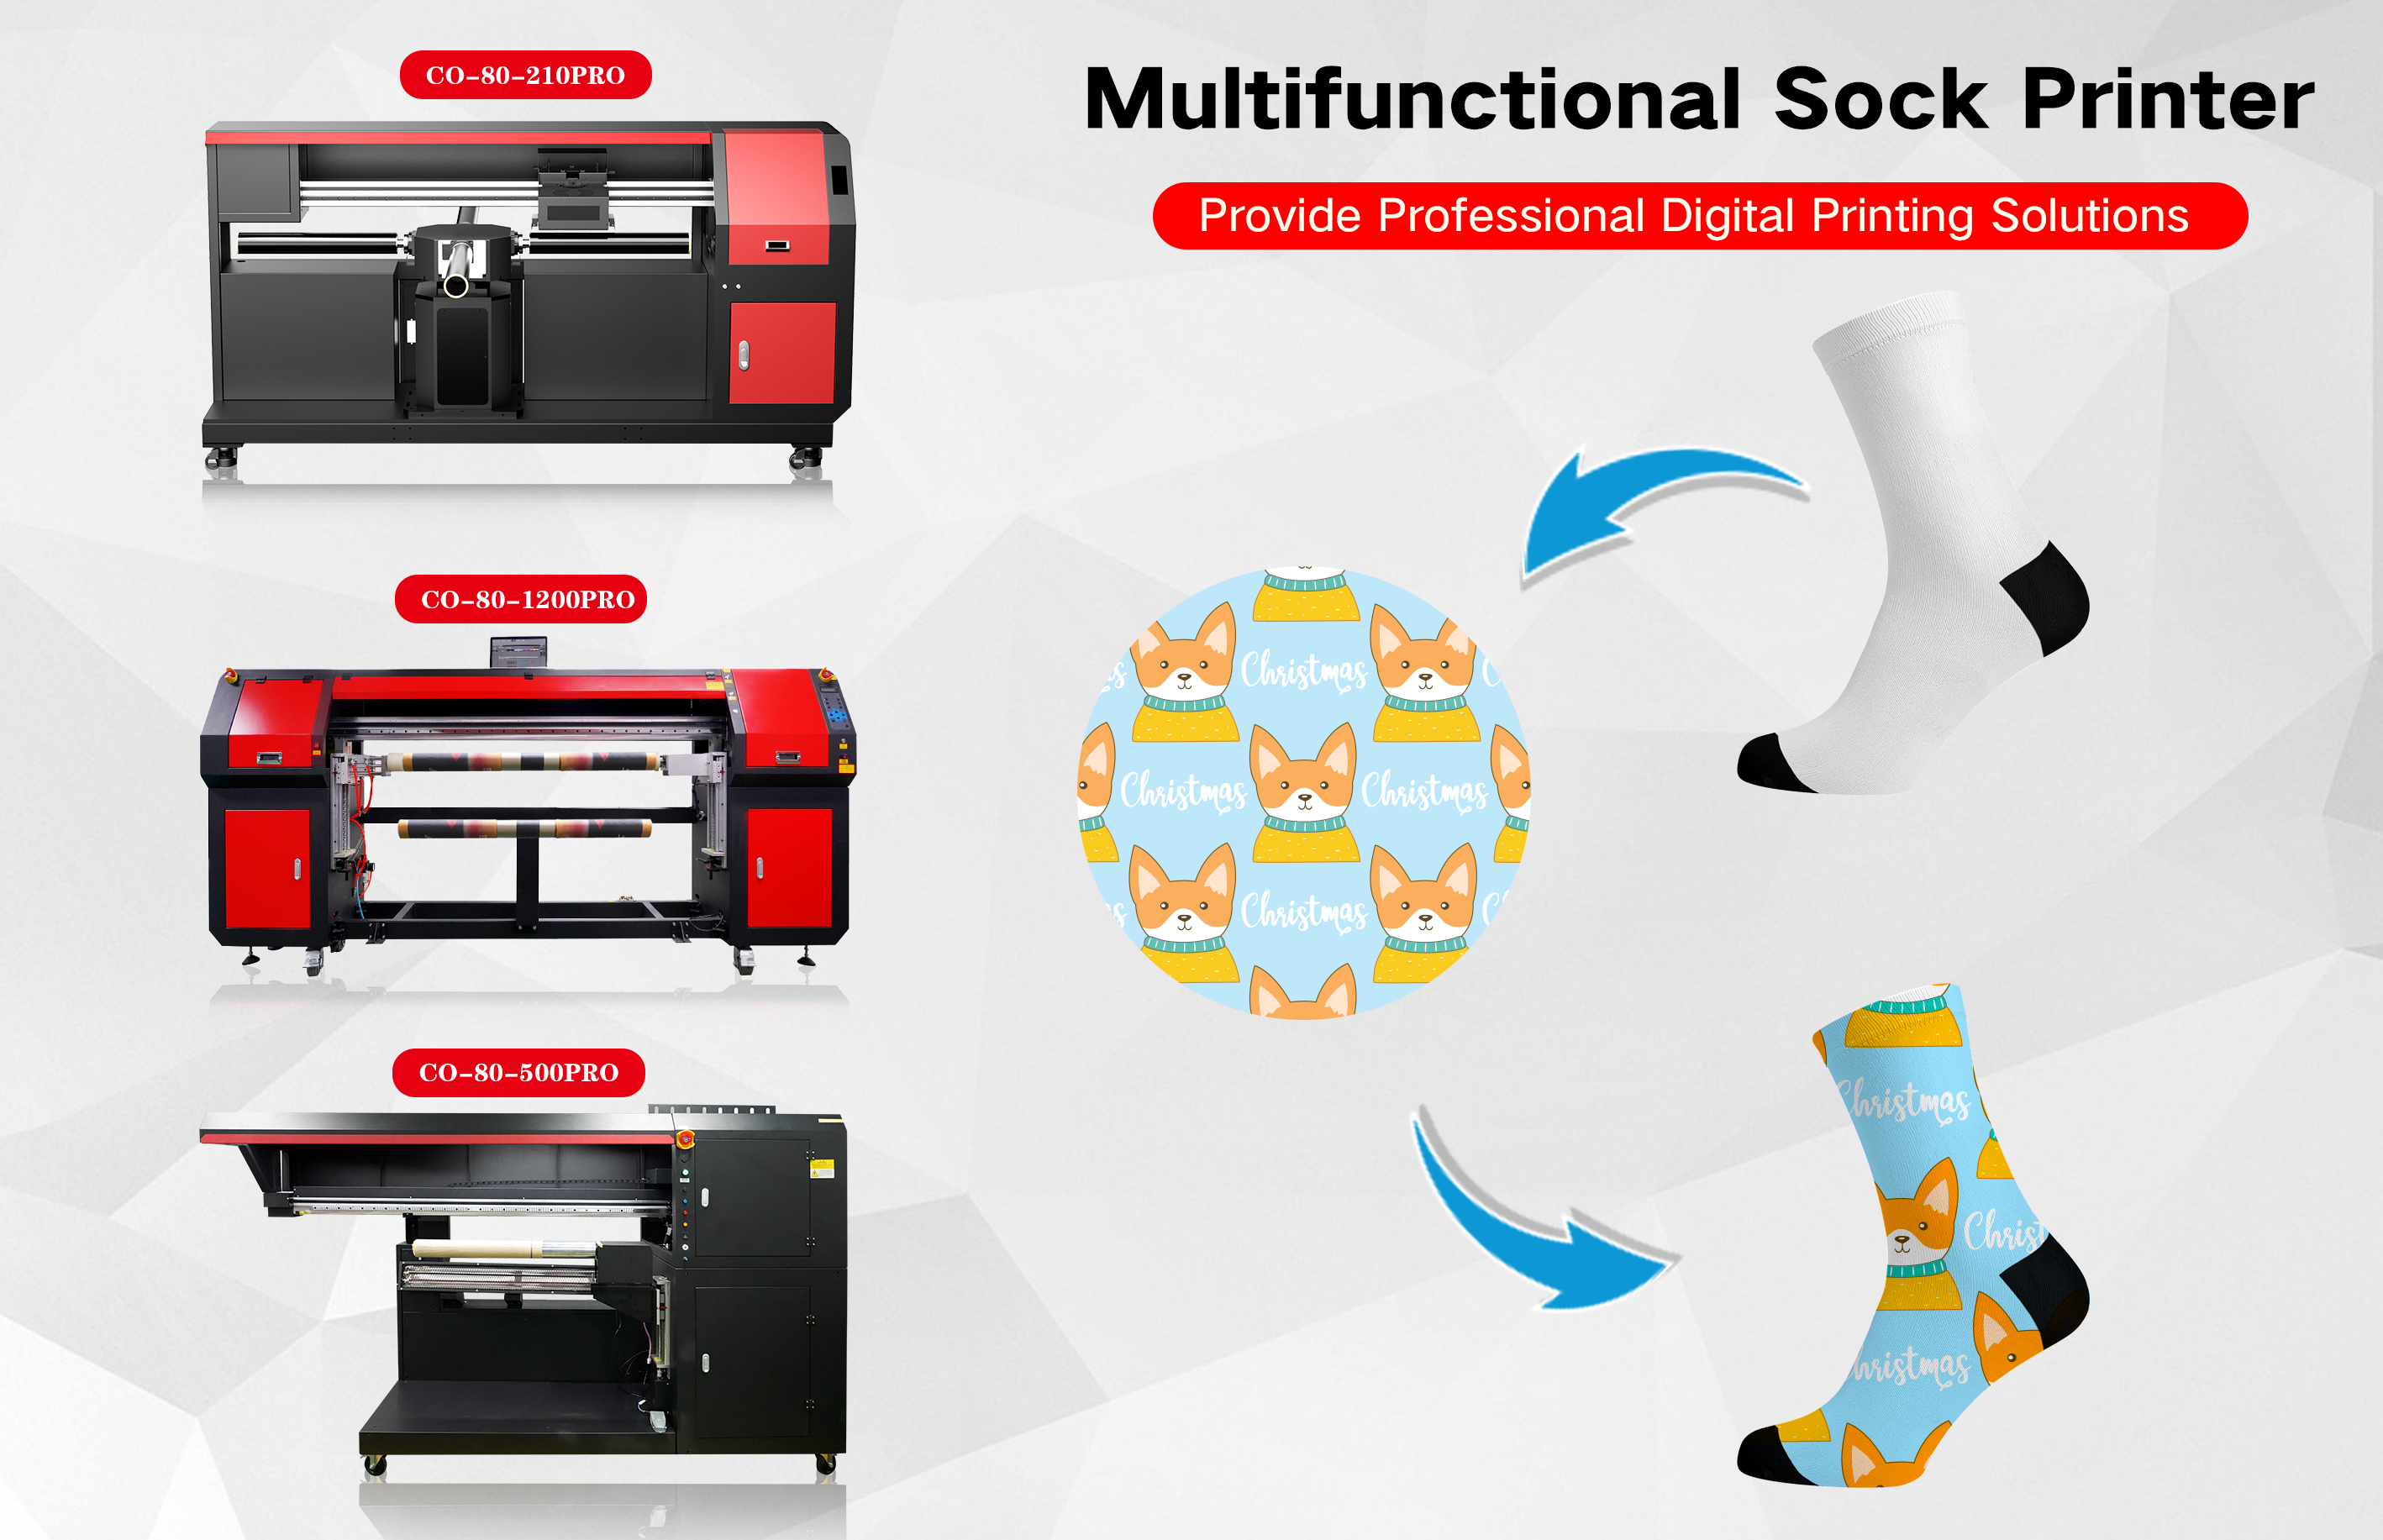 Multifunctional Sock Printer